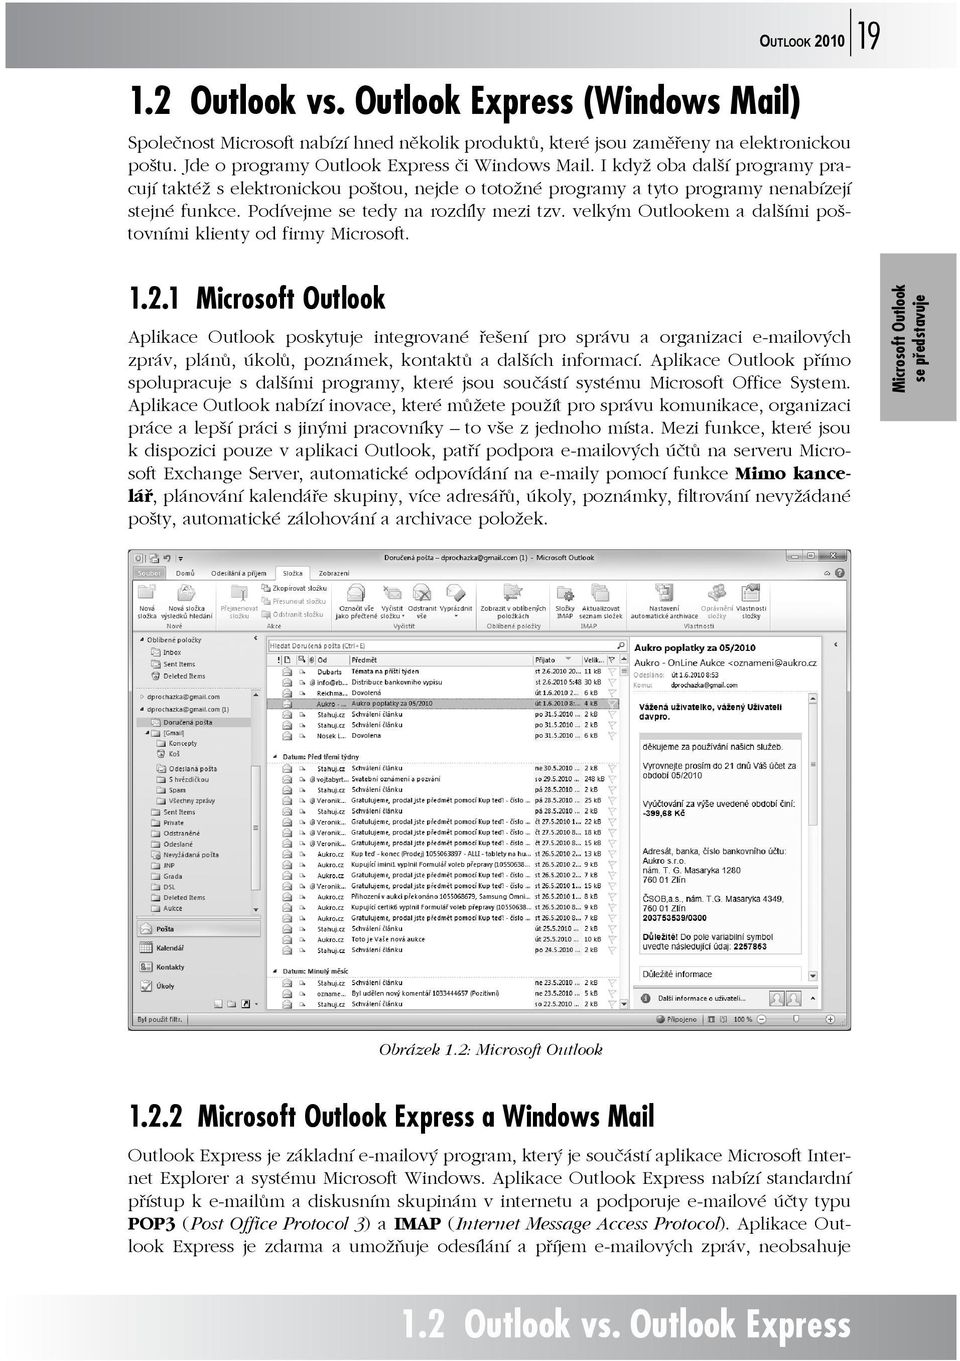 Podívejme se tedy na rozdíly mezi tzv. velkým Outlookem a dalšími poštovními klienty od firmy Microsoft. 1.2.